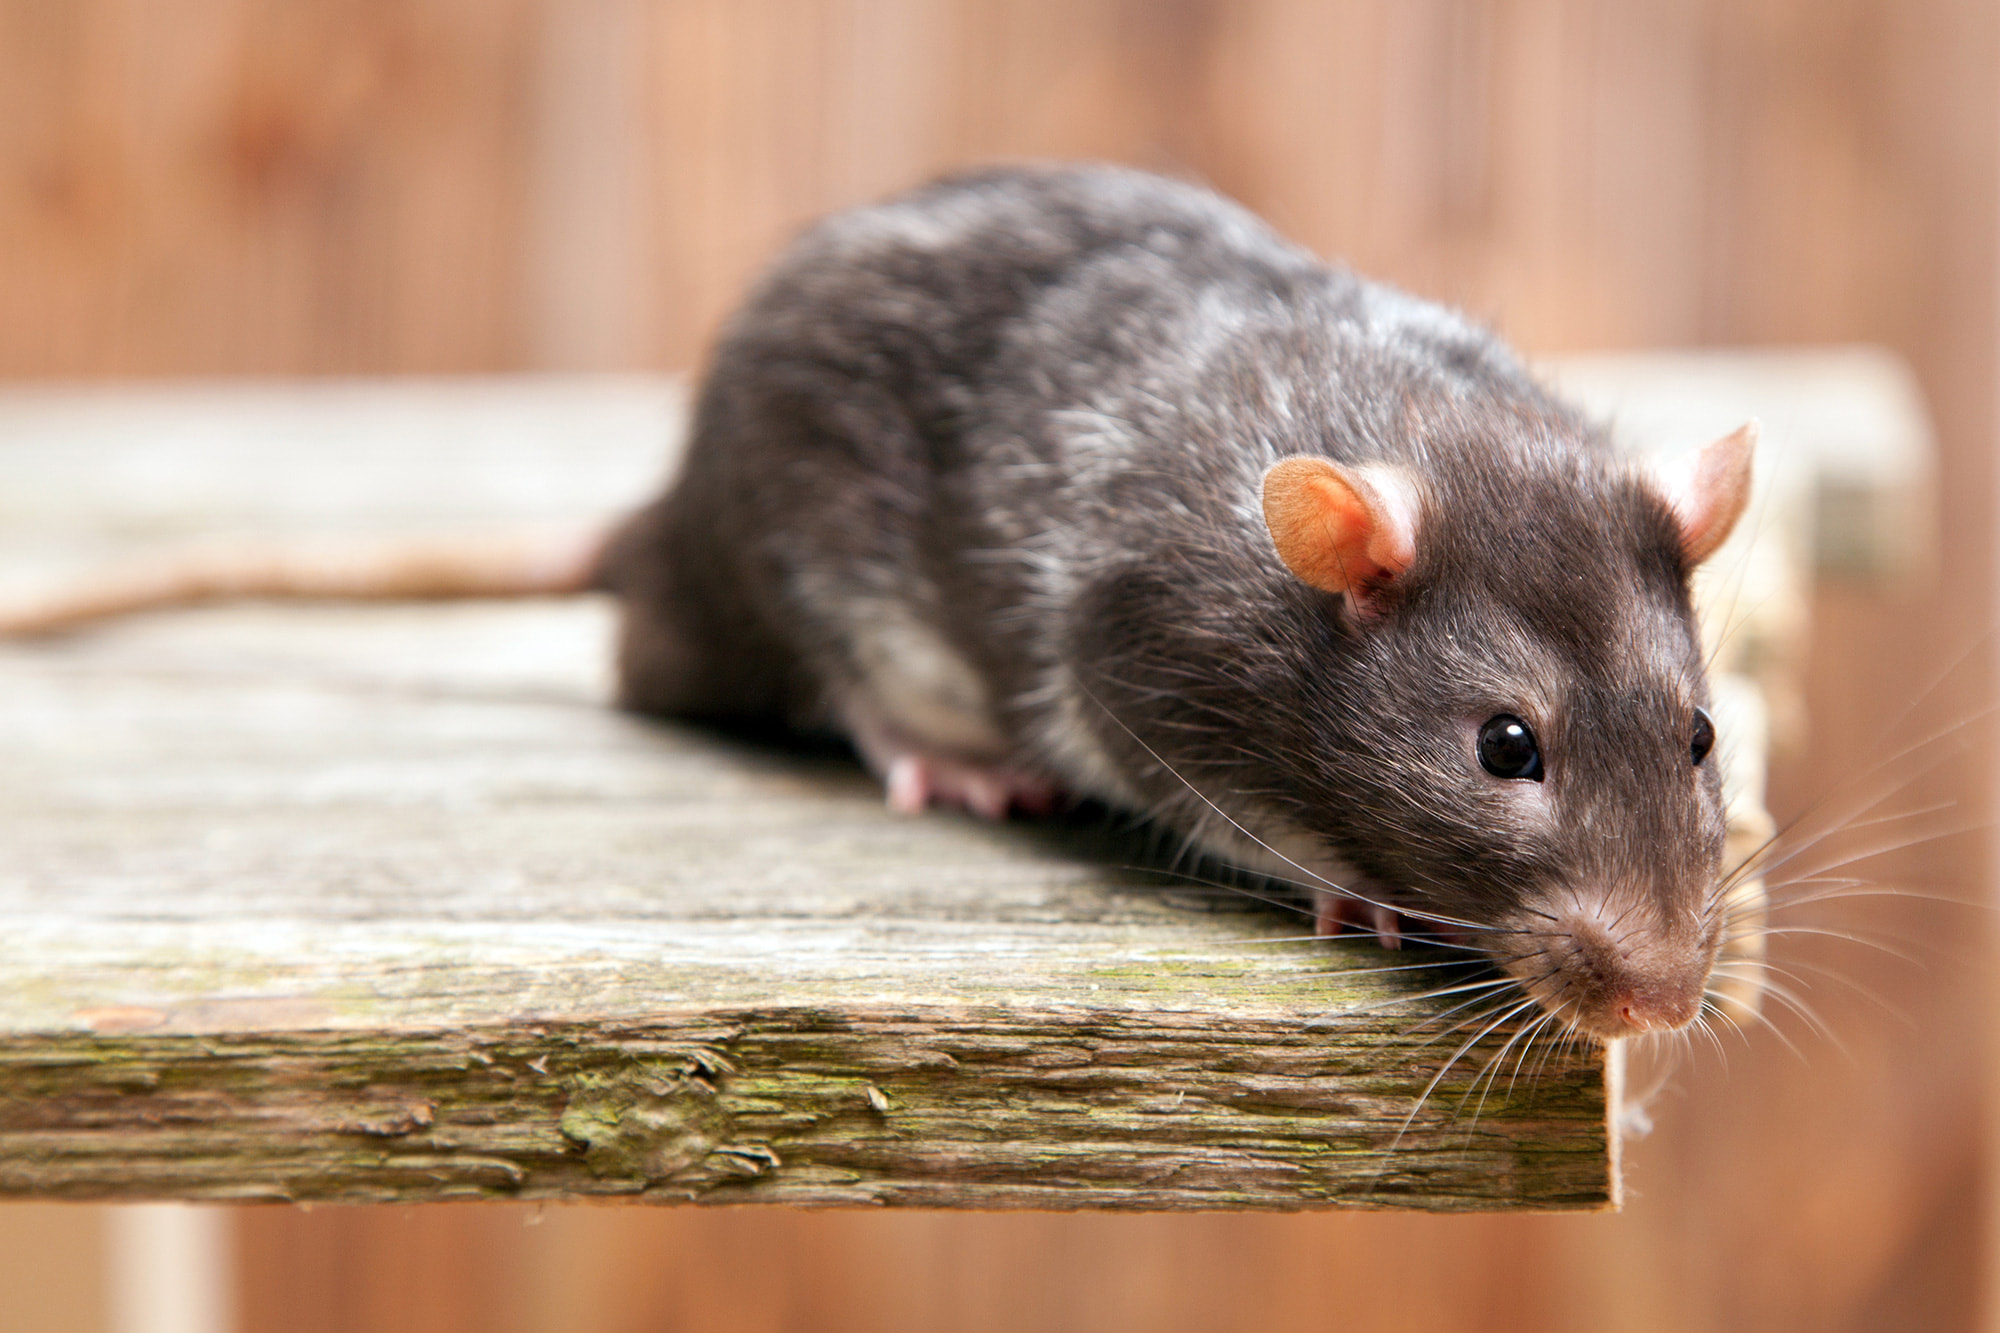 Société de dératisation : 4 bonnes raisons de faire appel à un professionnel contre les rats